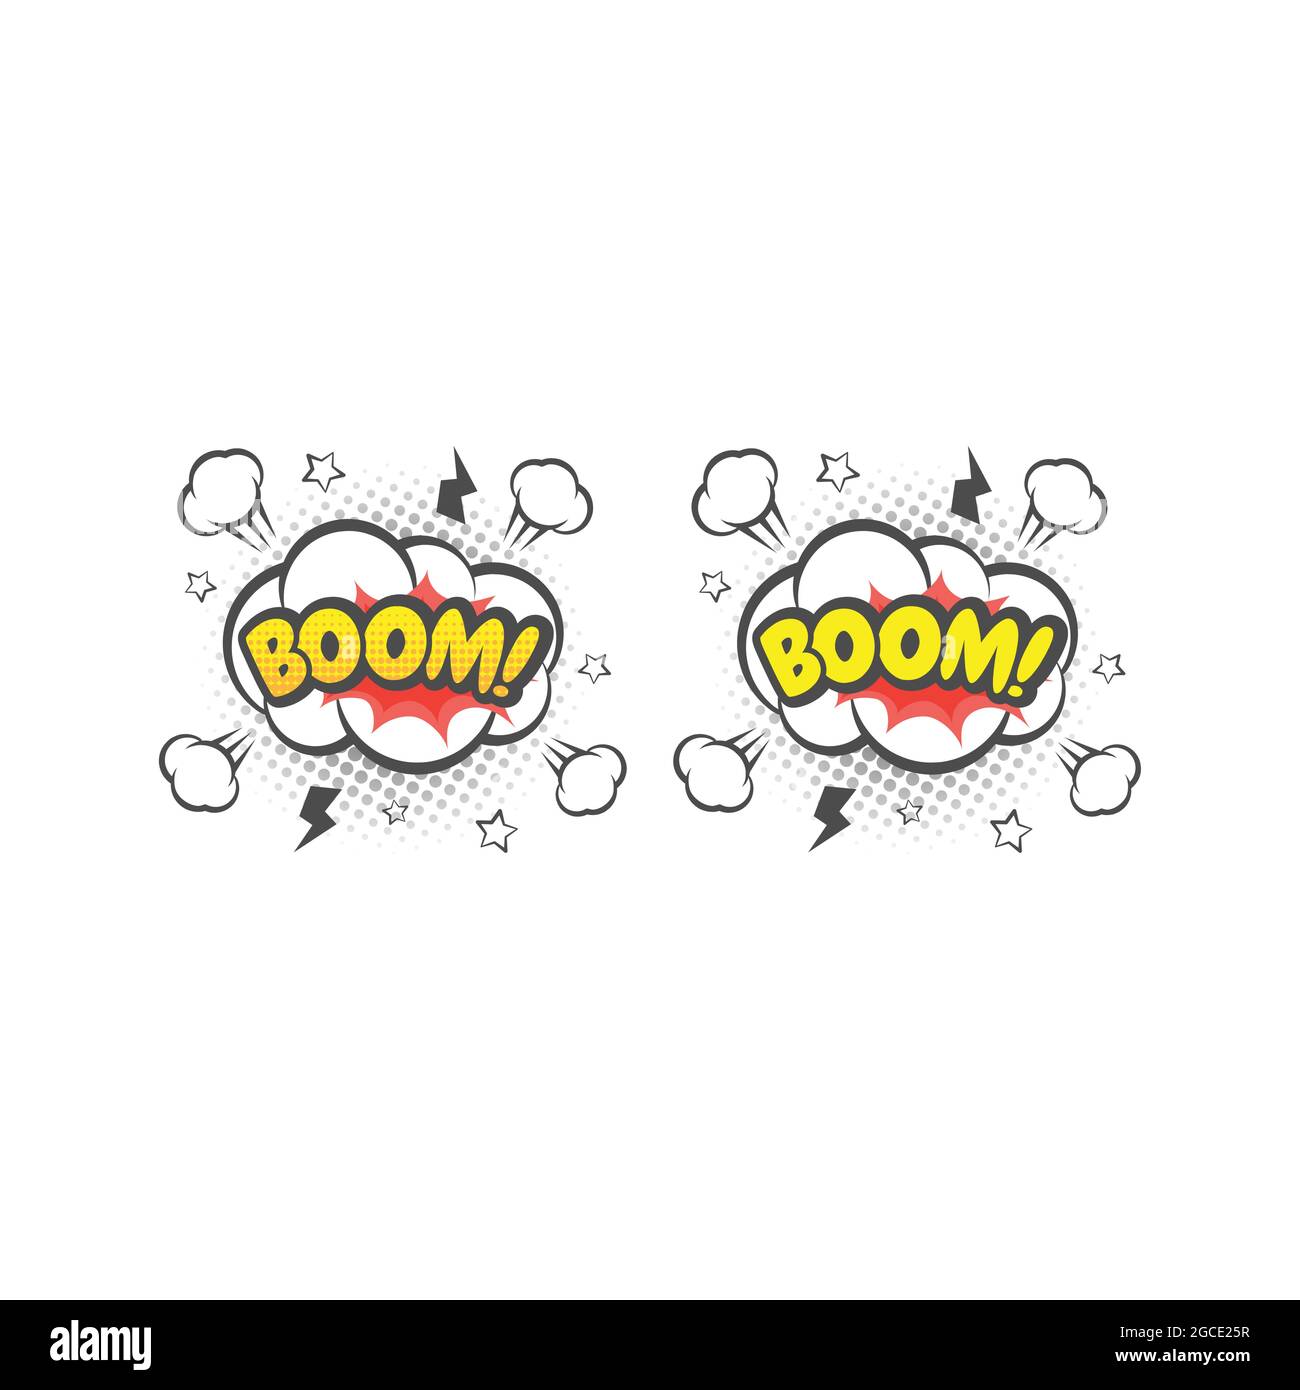 Boom e scoppio cartoni animati vettoriali colorati. Bang! Boom! testo scritta fumetto. Illustrazione Vettoriale